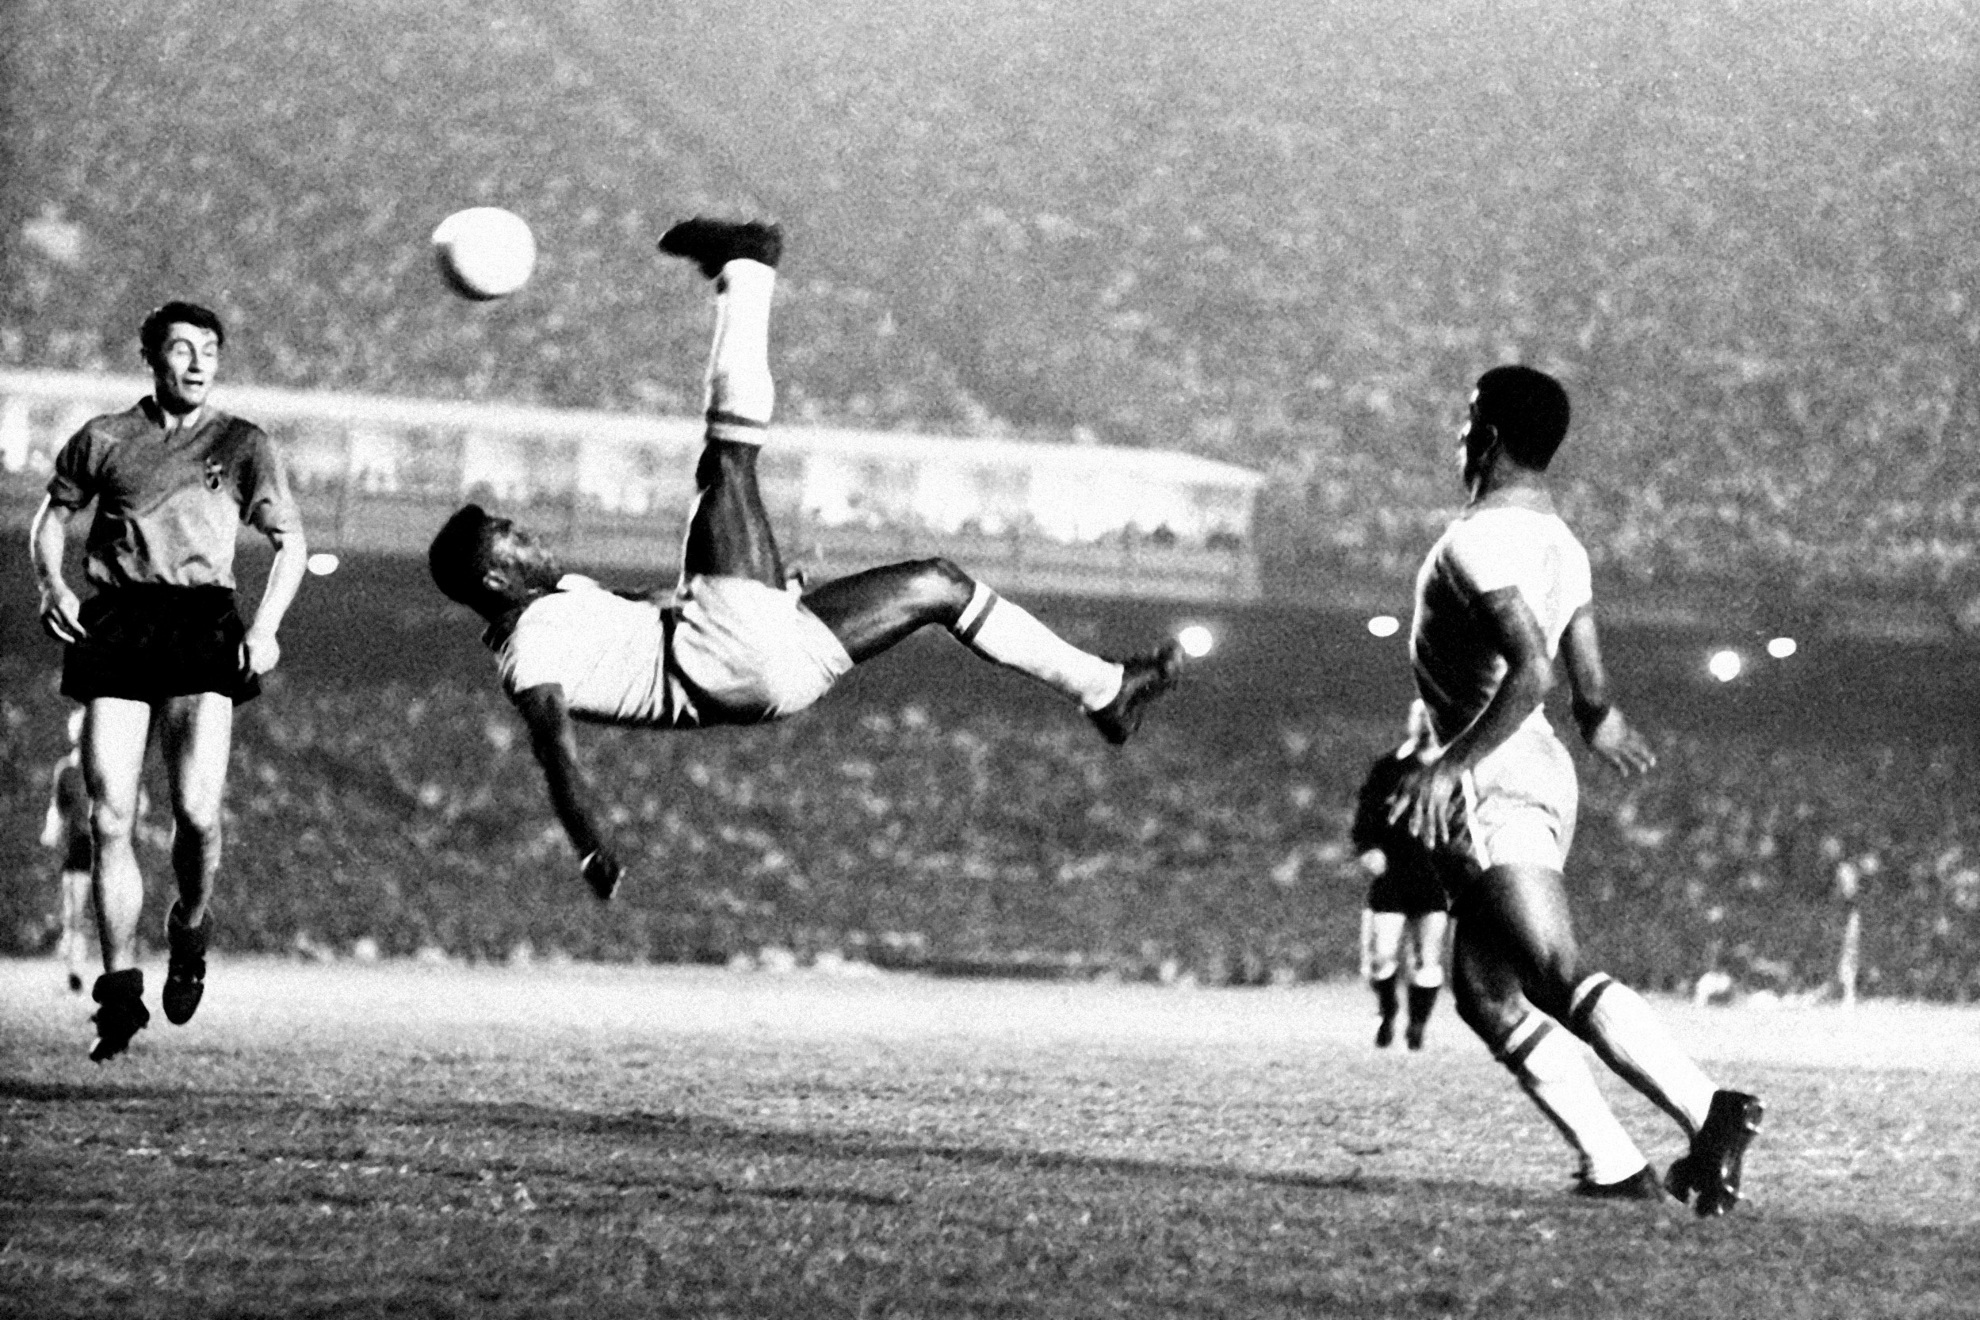 Pelé overhead kick